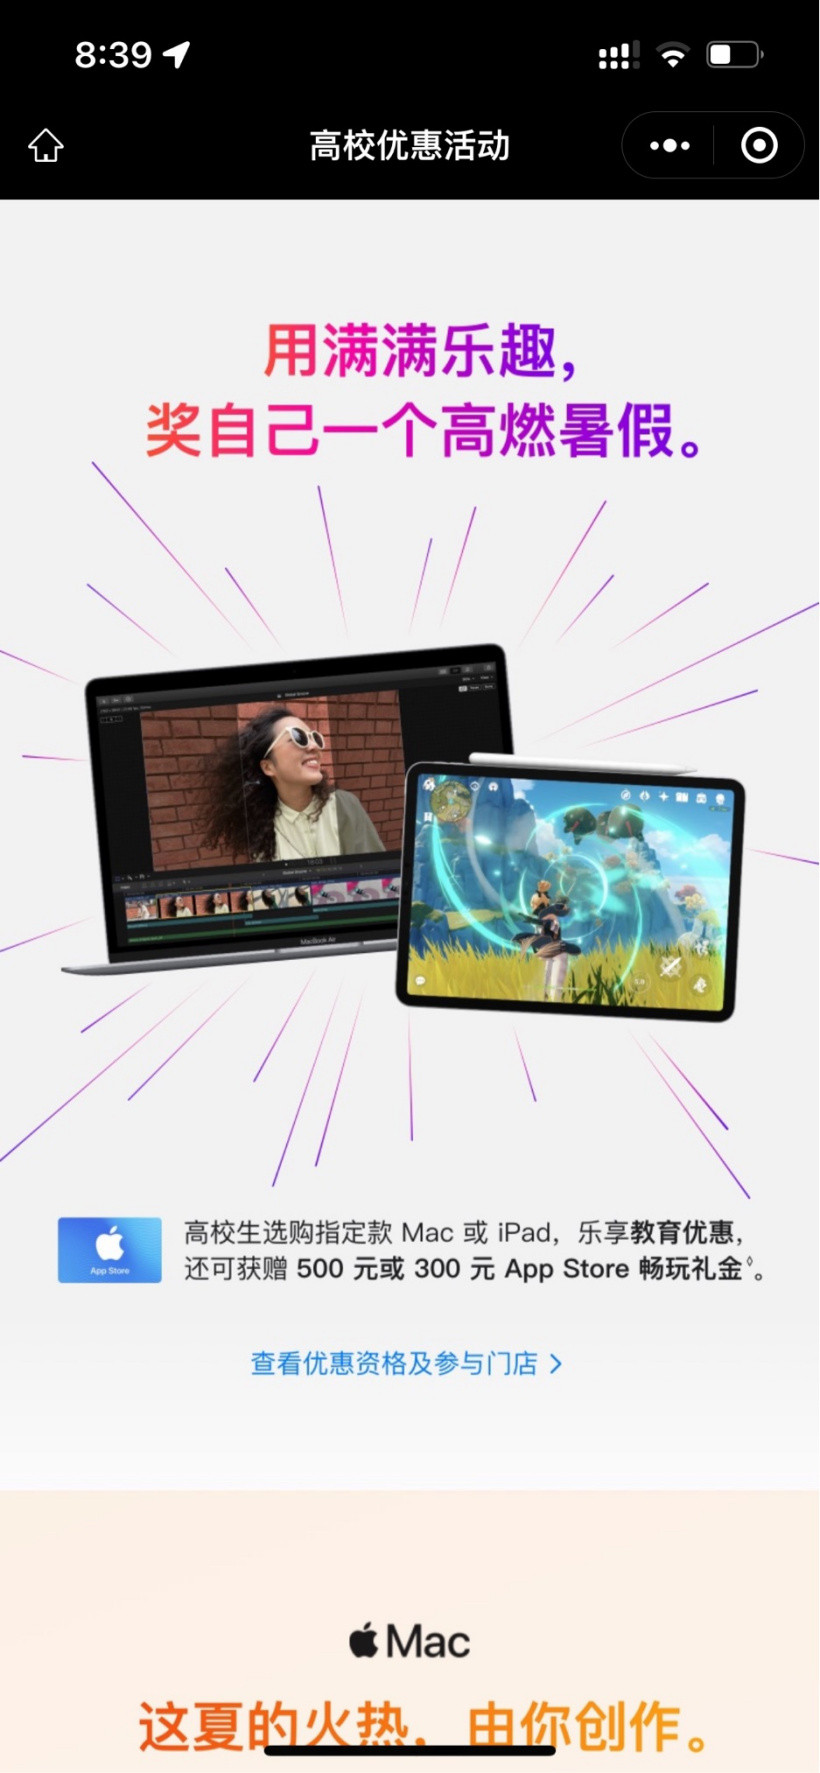 苹果授权店推高校优惠活动，购买指定Mac、iPad最高可获500元礼金